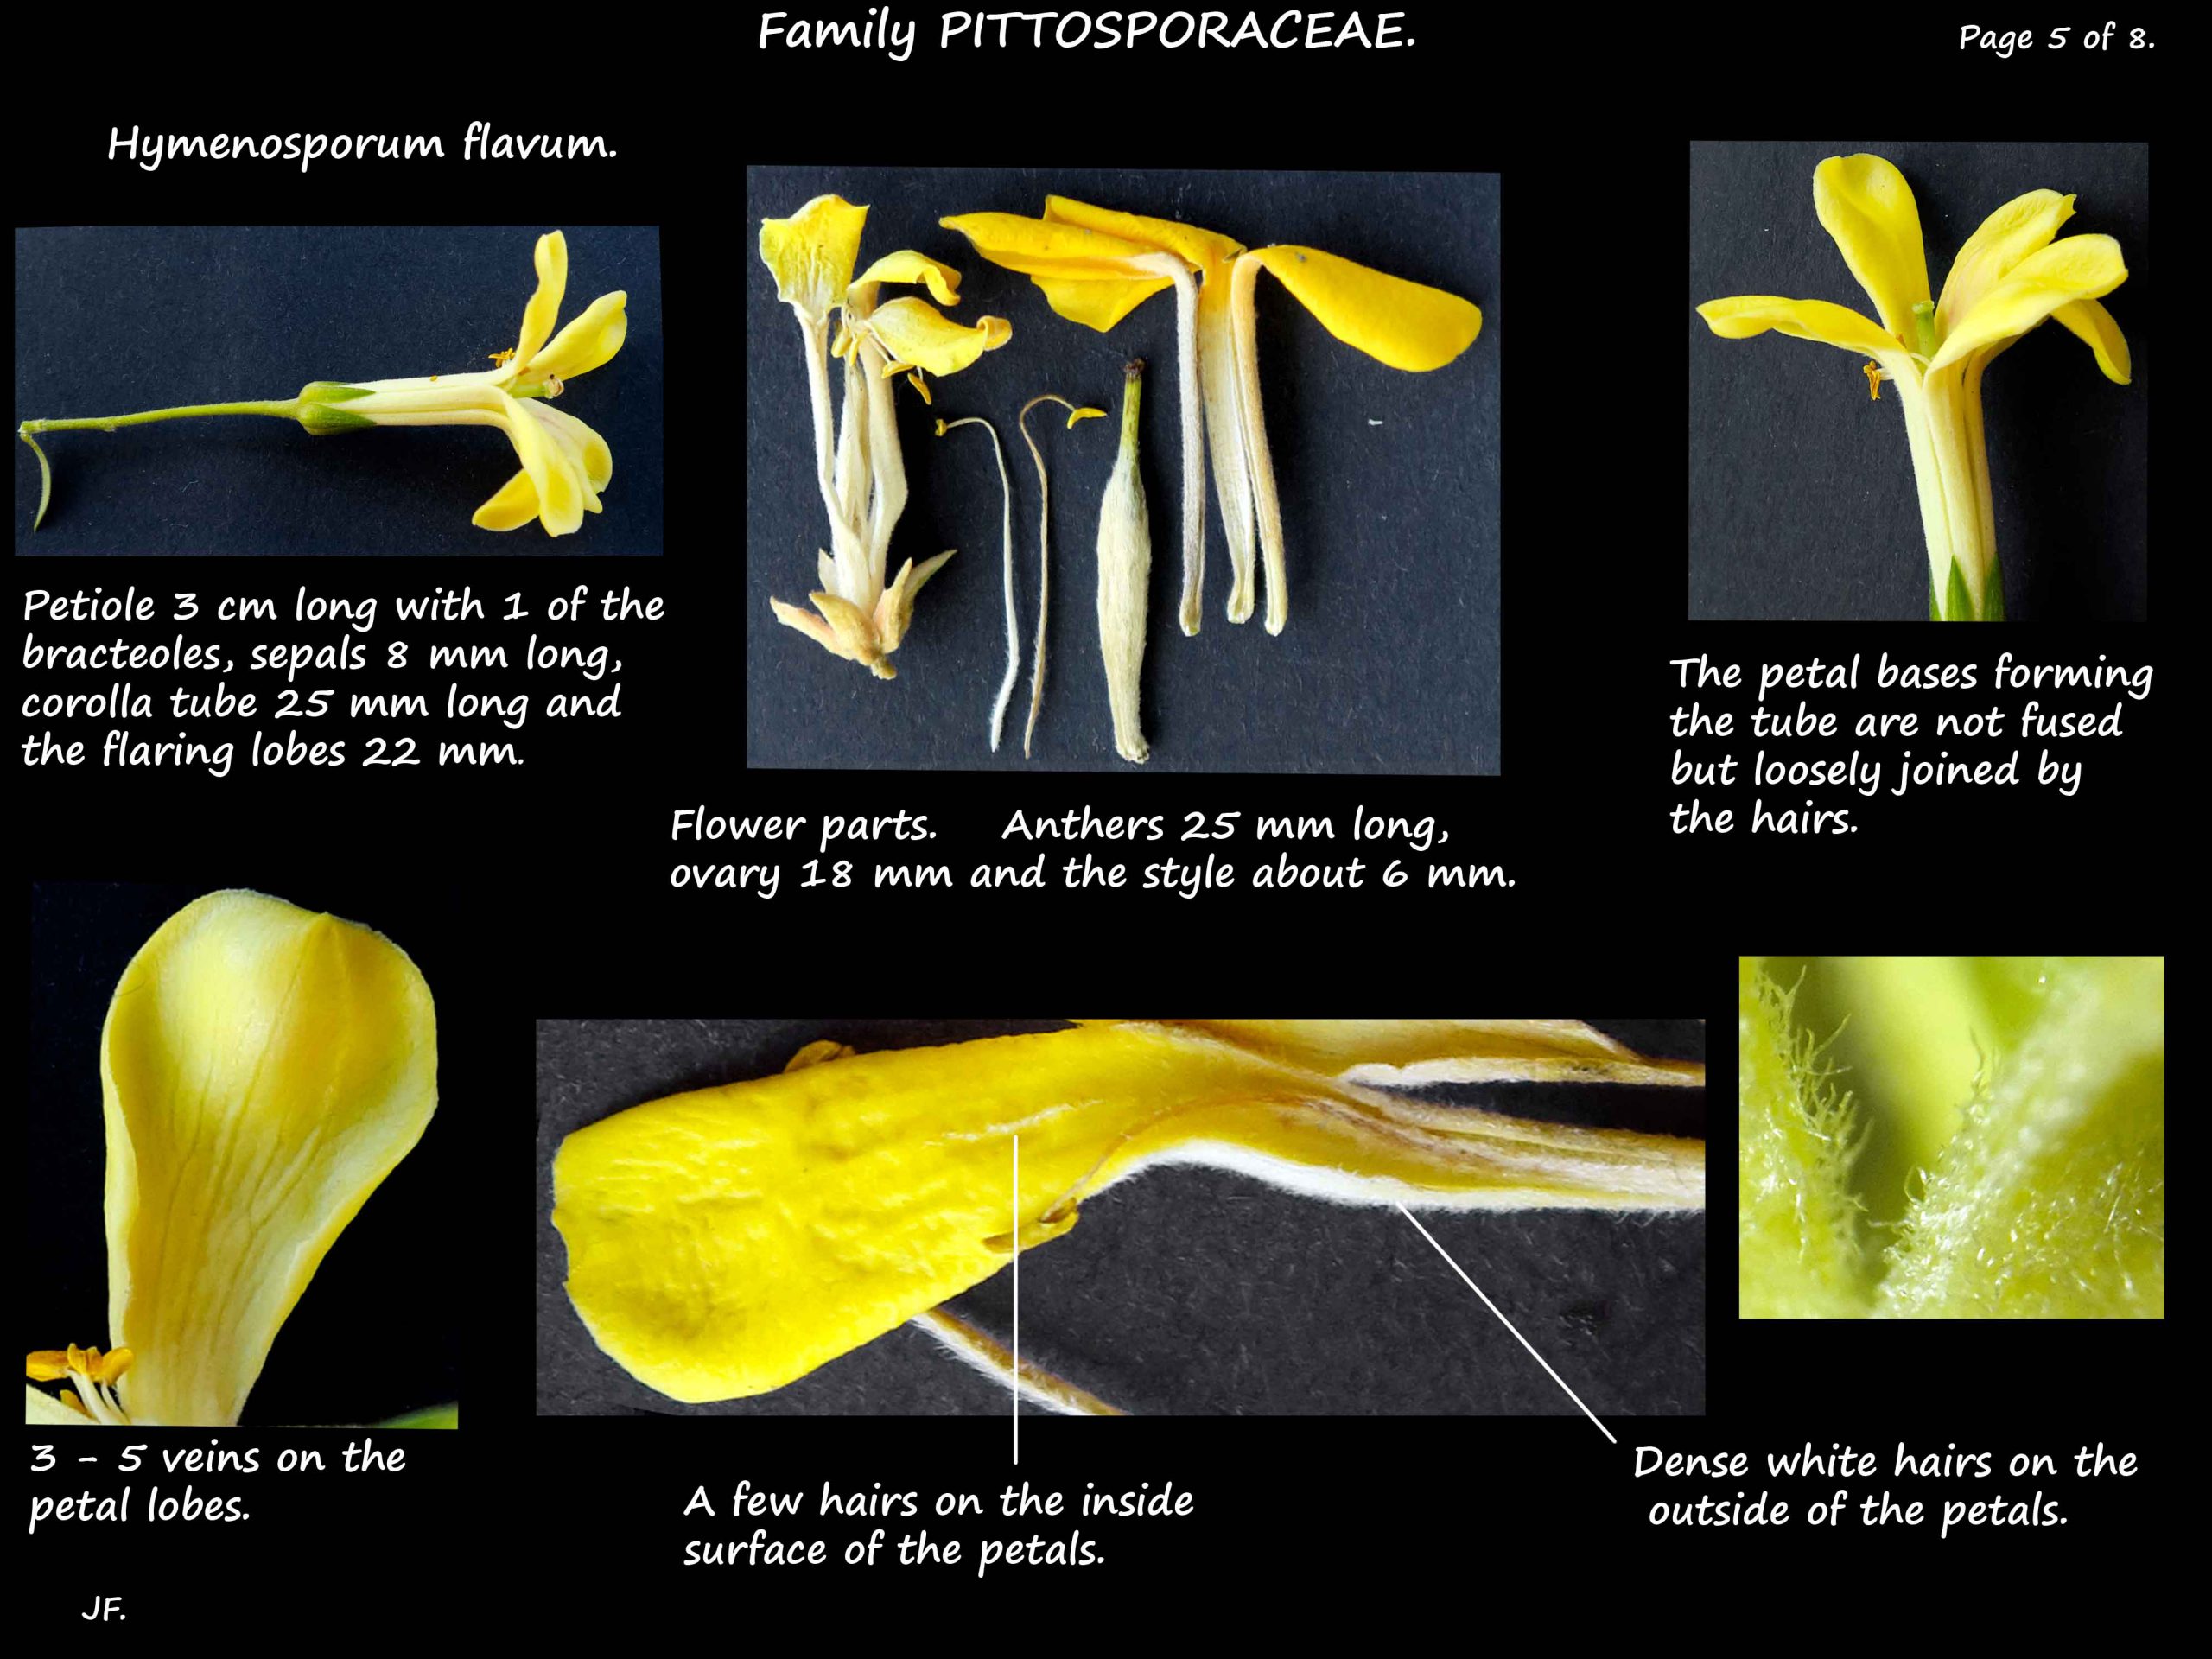 5 Hymenosporum flavum petals